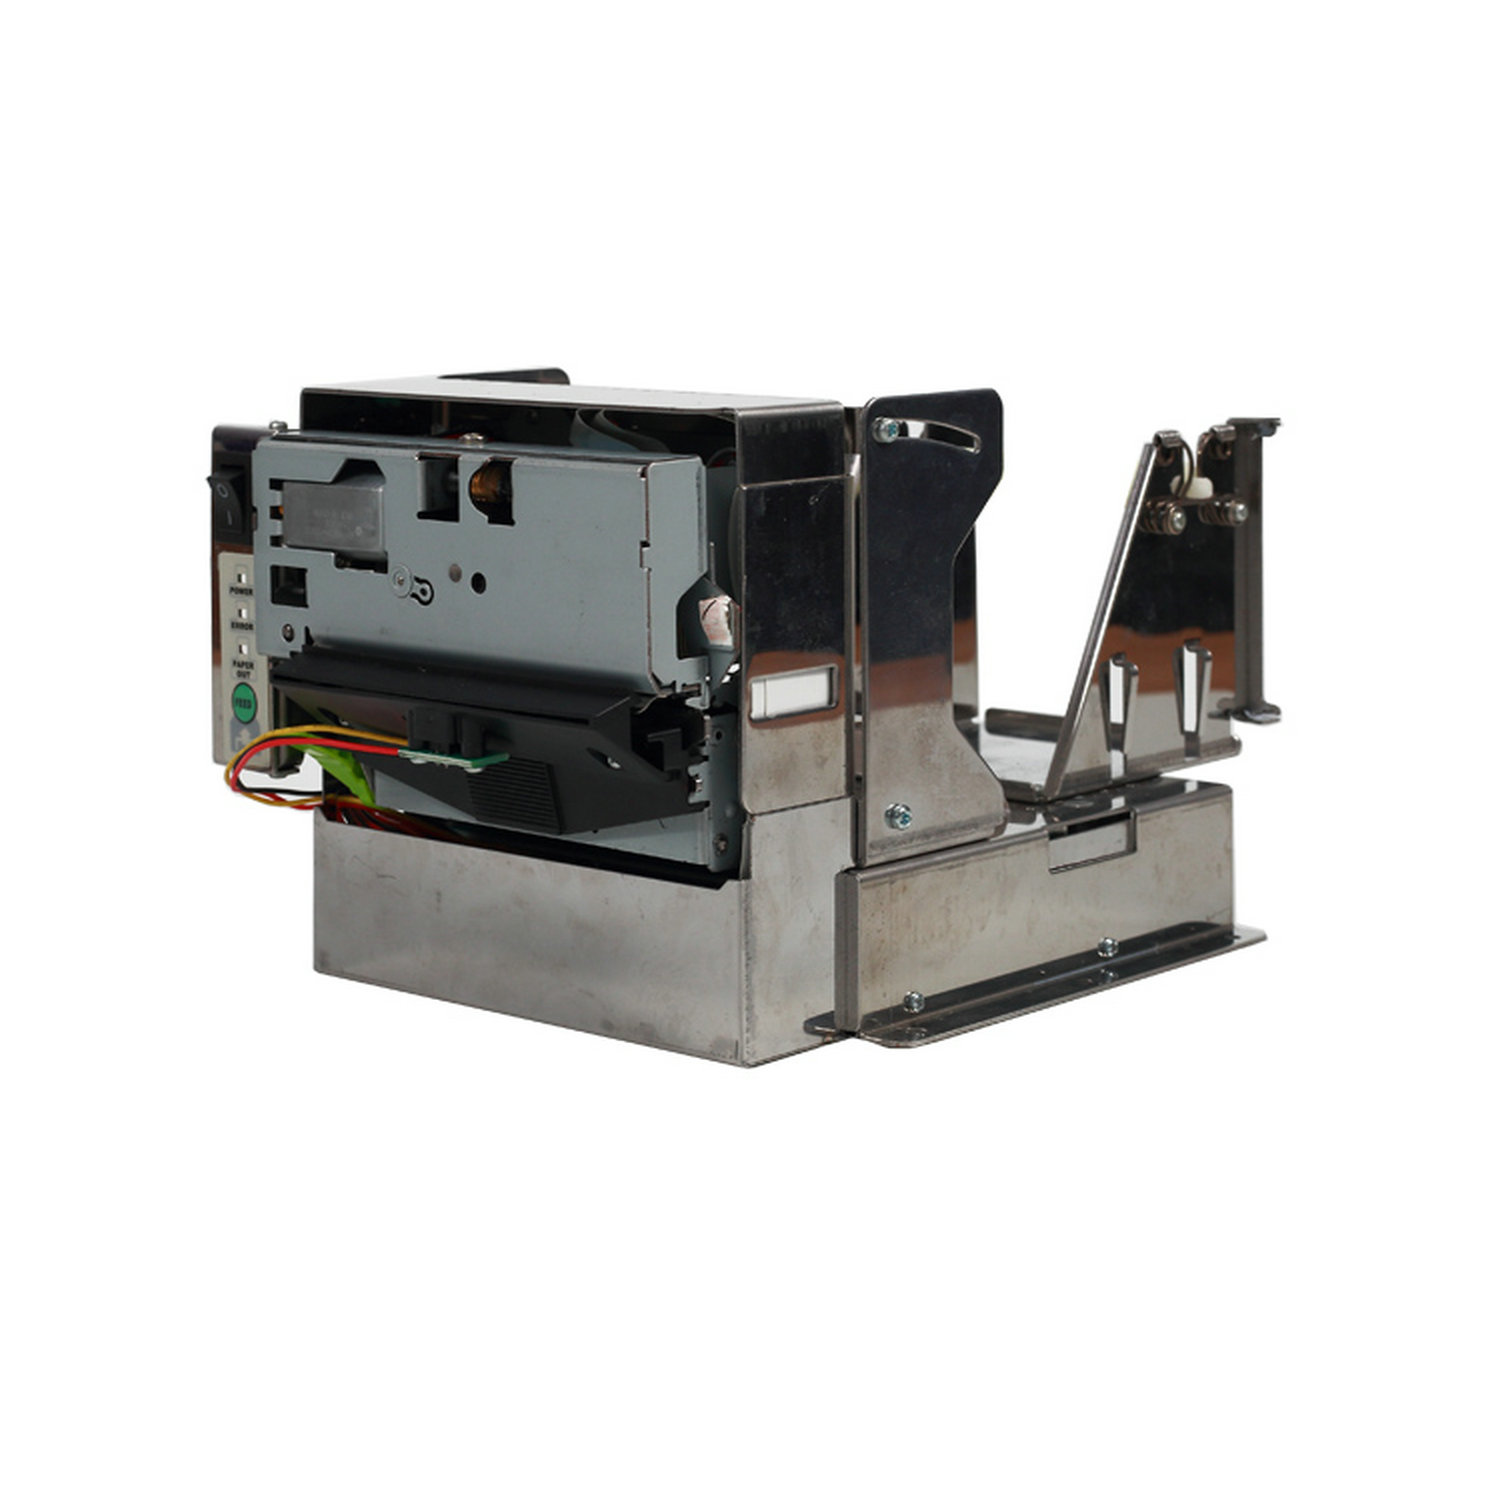 HCC-EU801 ESC/POS 80mm Kiosk 热敏二维条码收据打印机